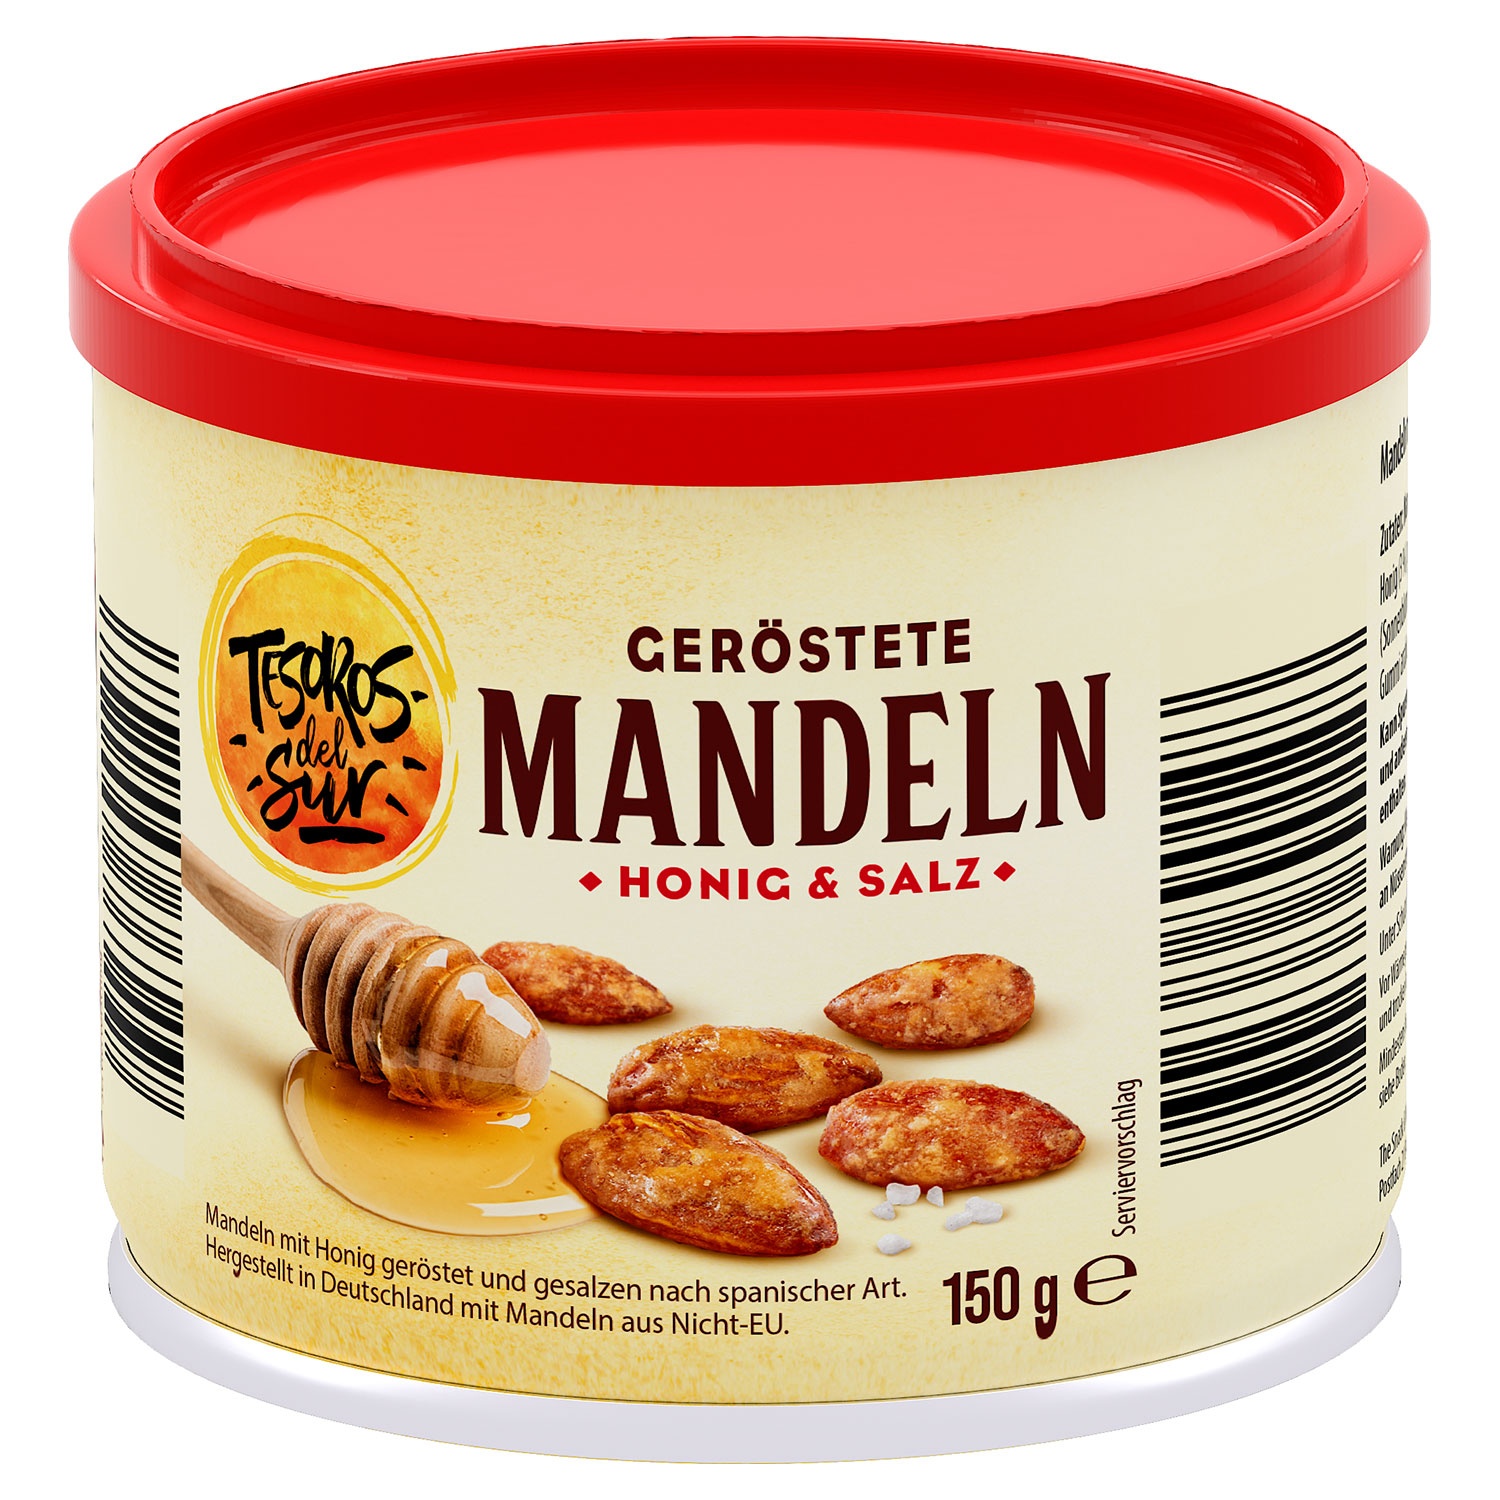 TESOROS DEL SUR Geröstete Snack-Mandeln 150 g